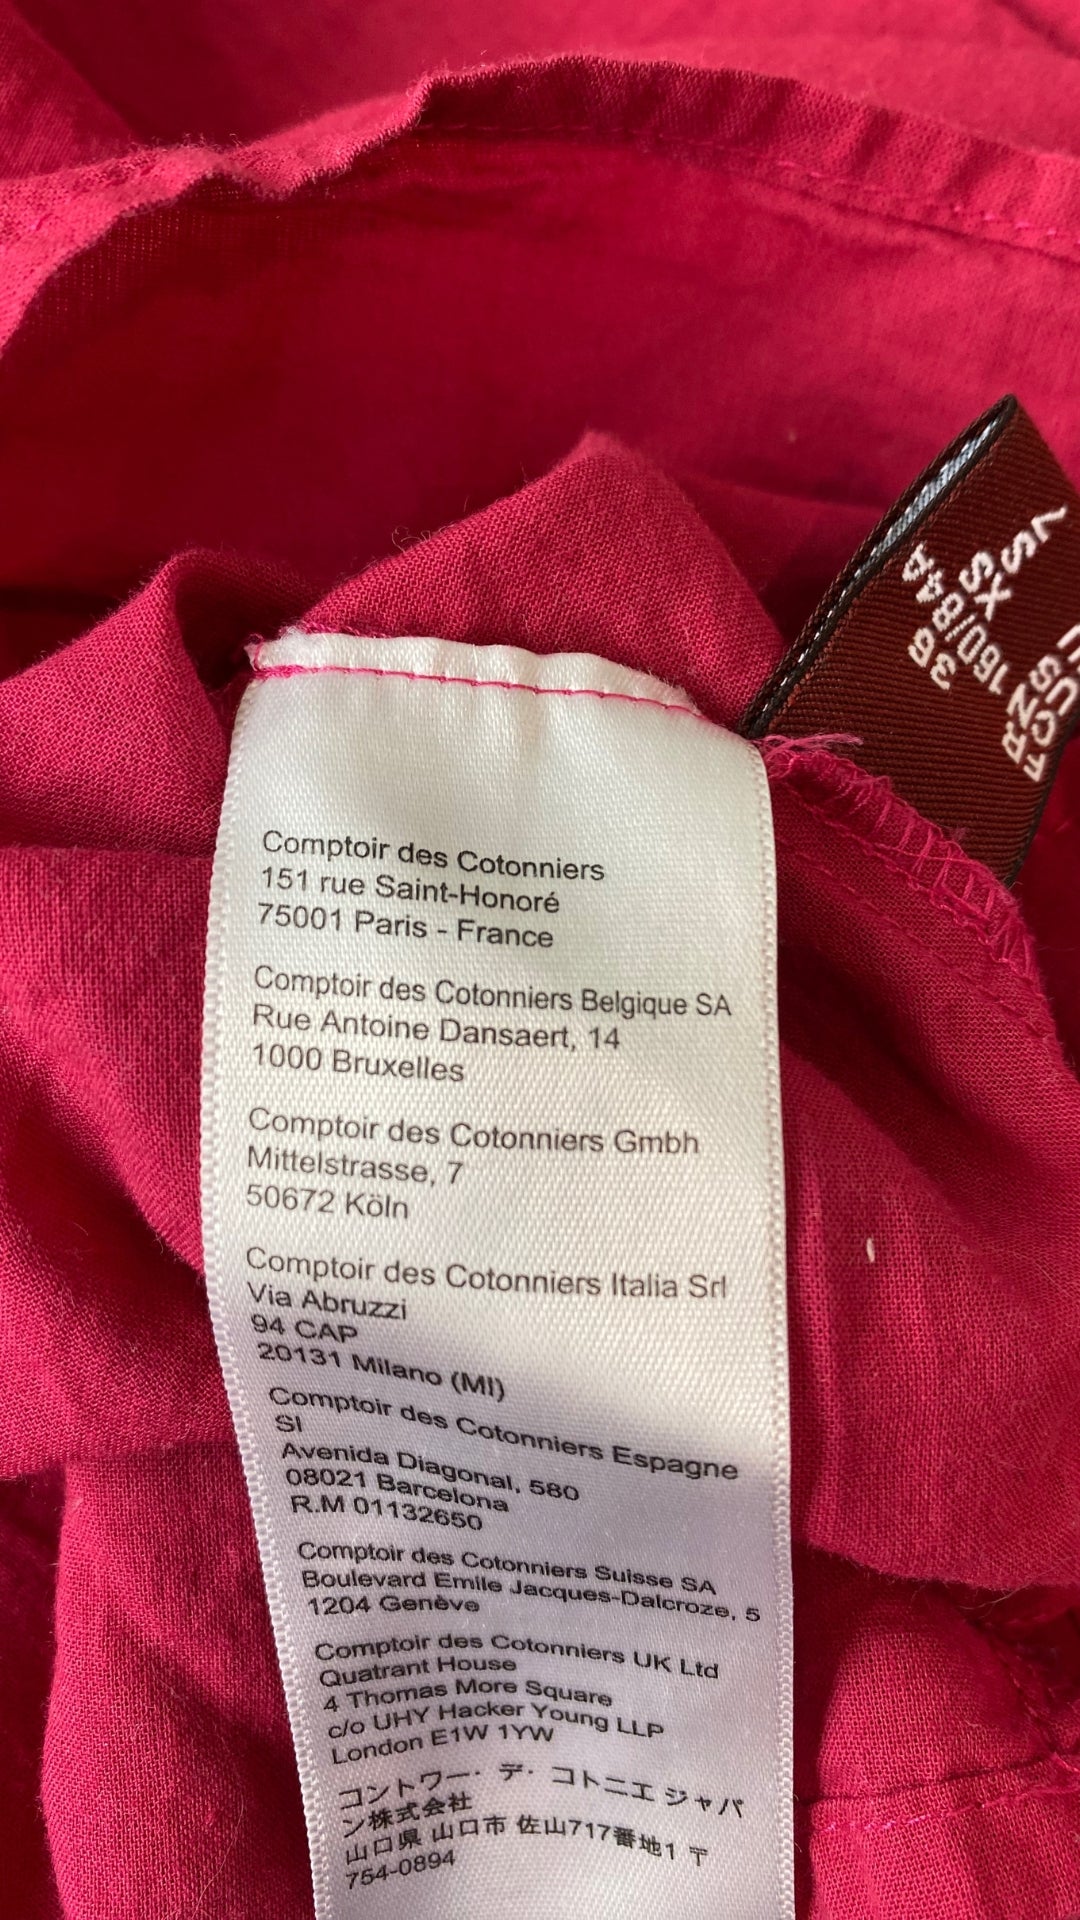 Robe fuchsia à bretelles ajustables en coton Comptoir des Cotonniers, taille xs. Vue de l'étiquette de marque.